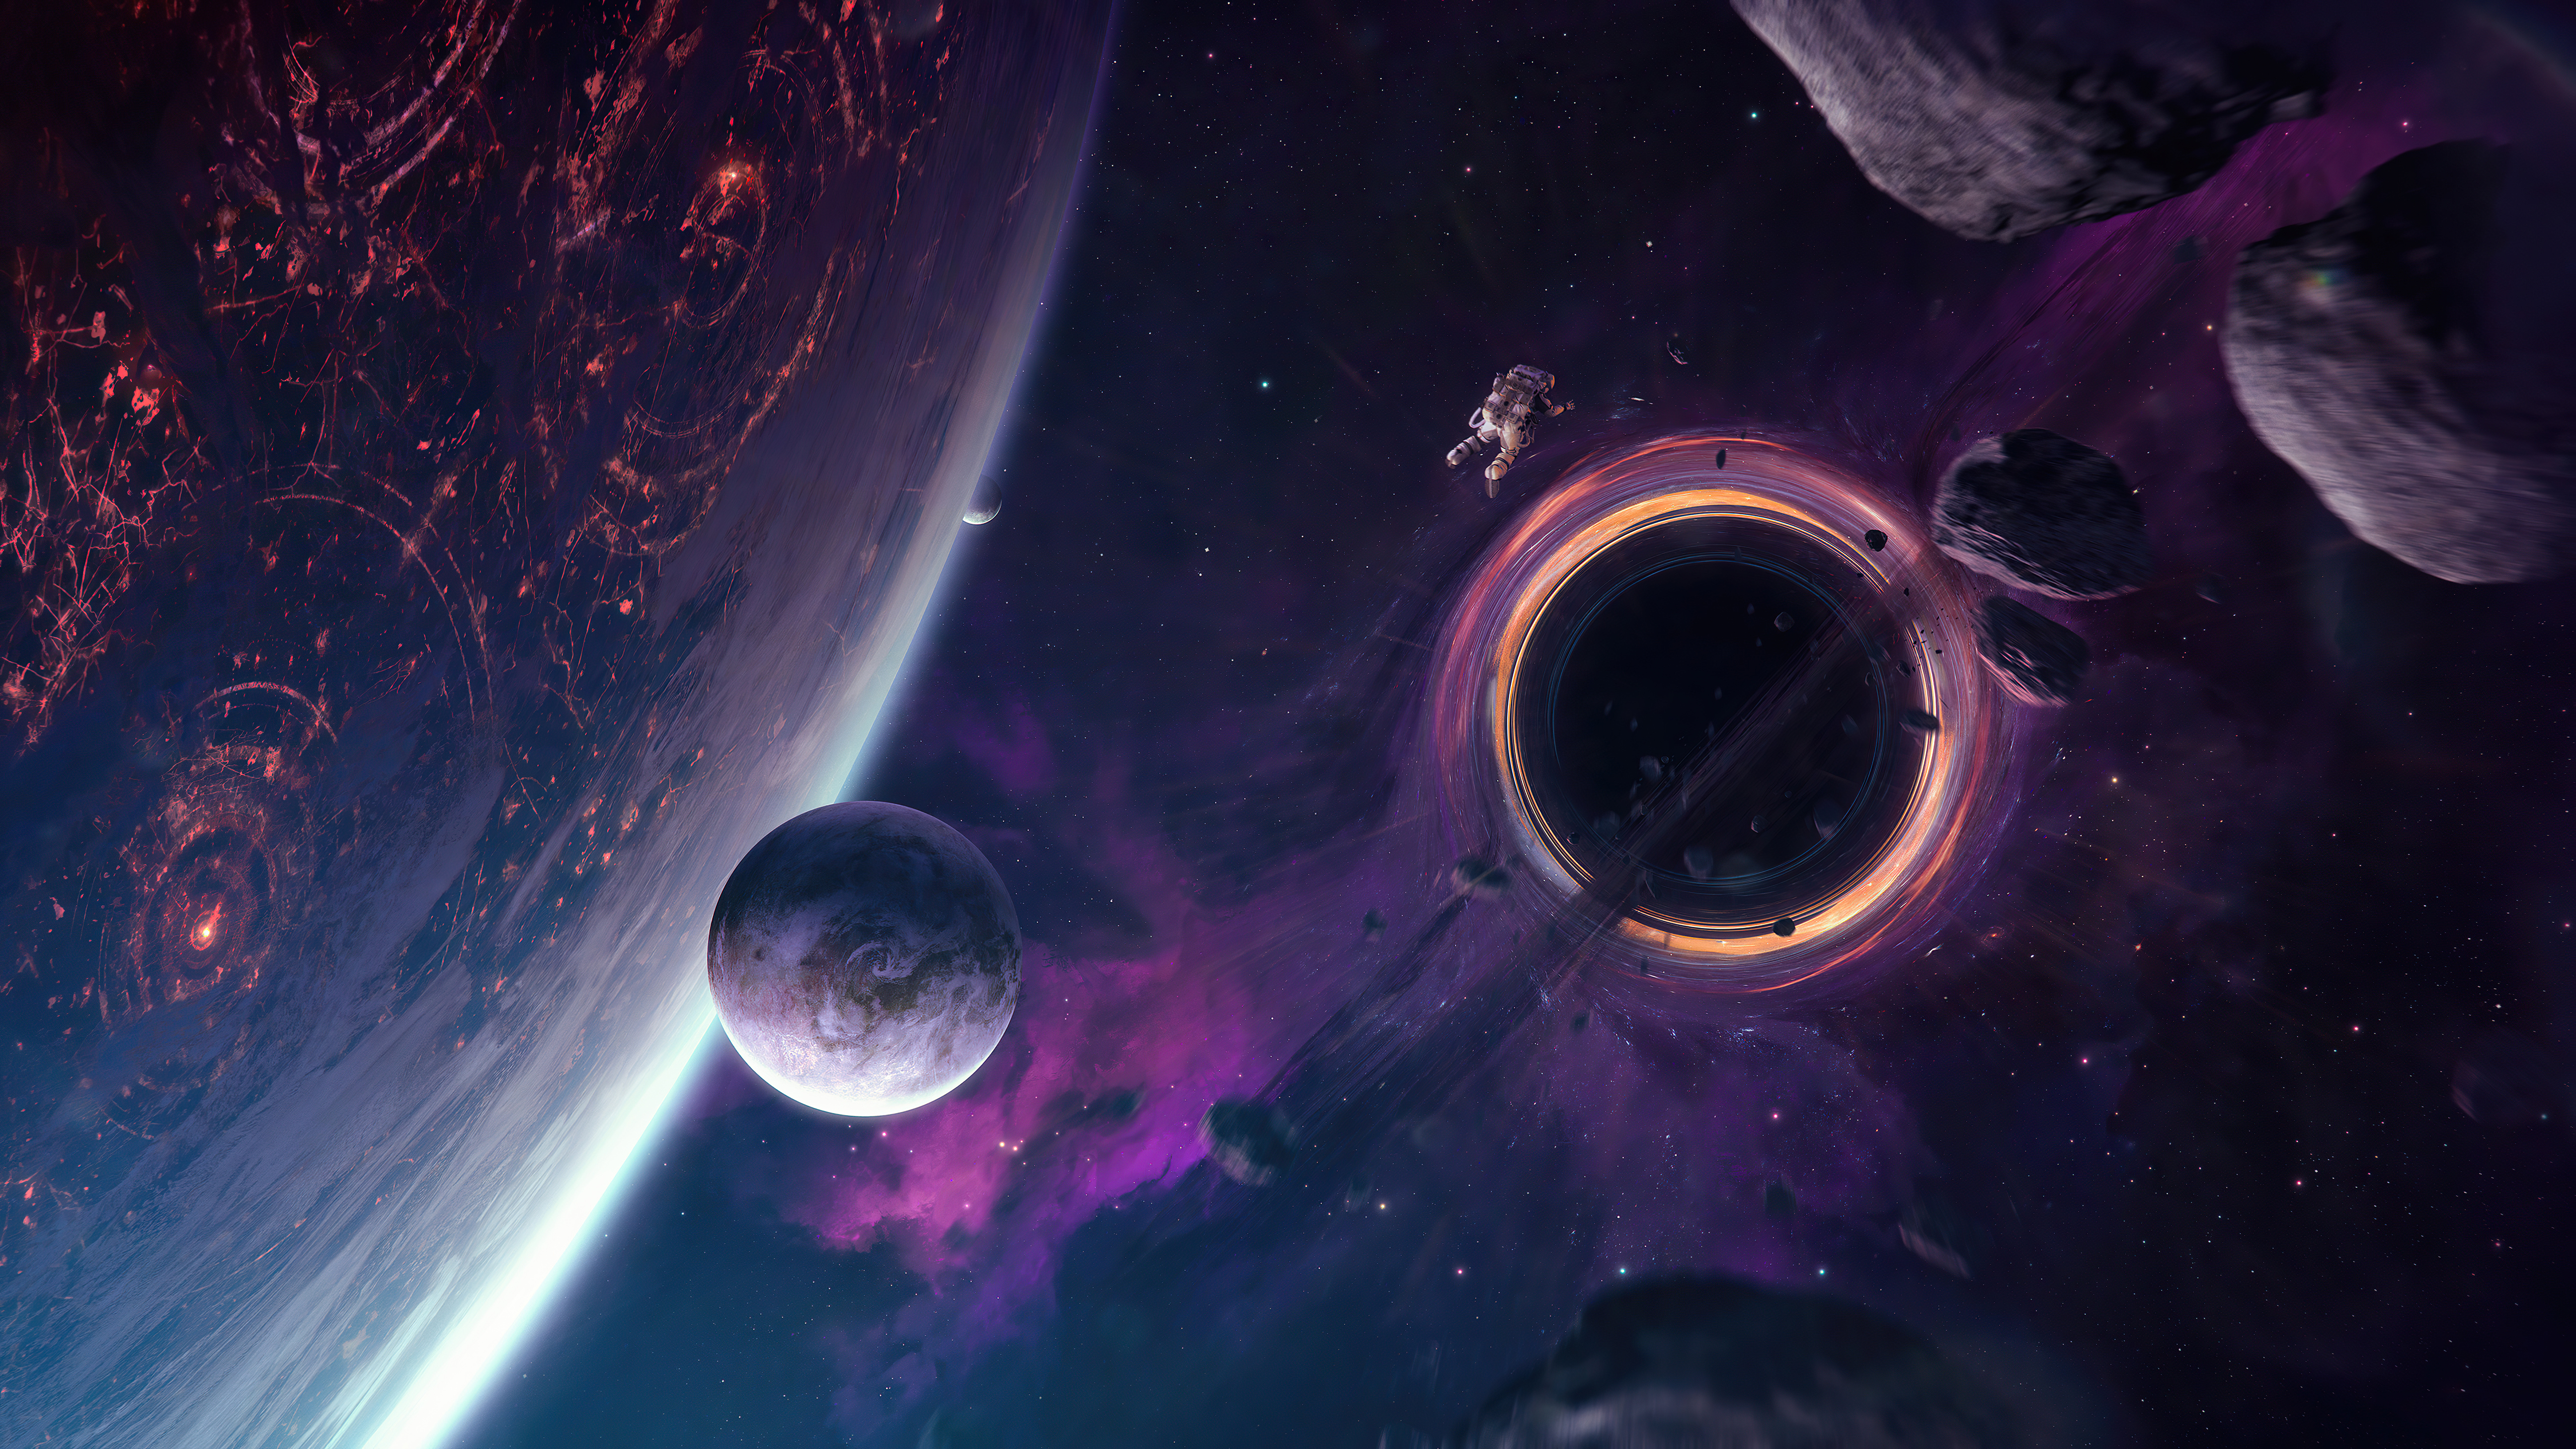 Sci Fi Astronaut 4k Ultra HD Wallpaper by Tobias Roetsch